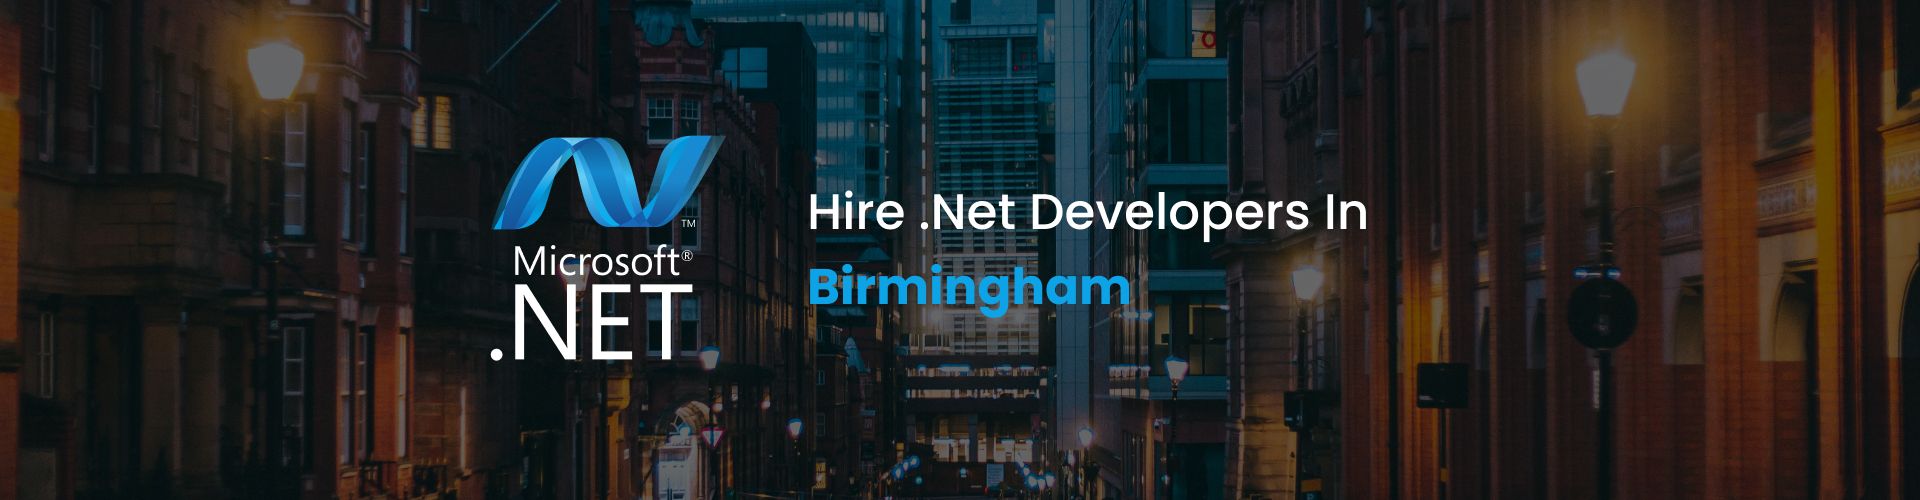 hire dot net developers in birmingham